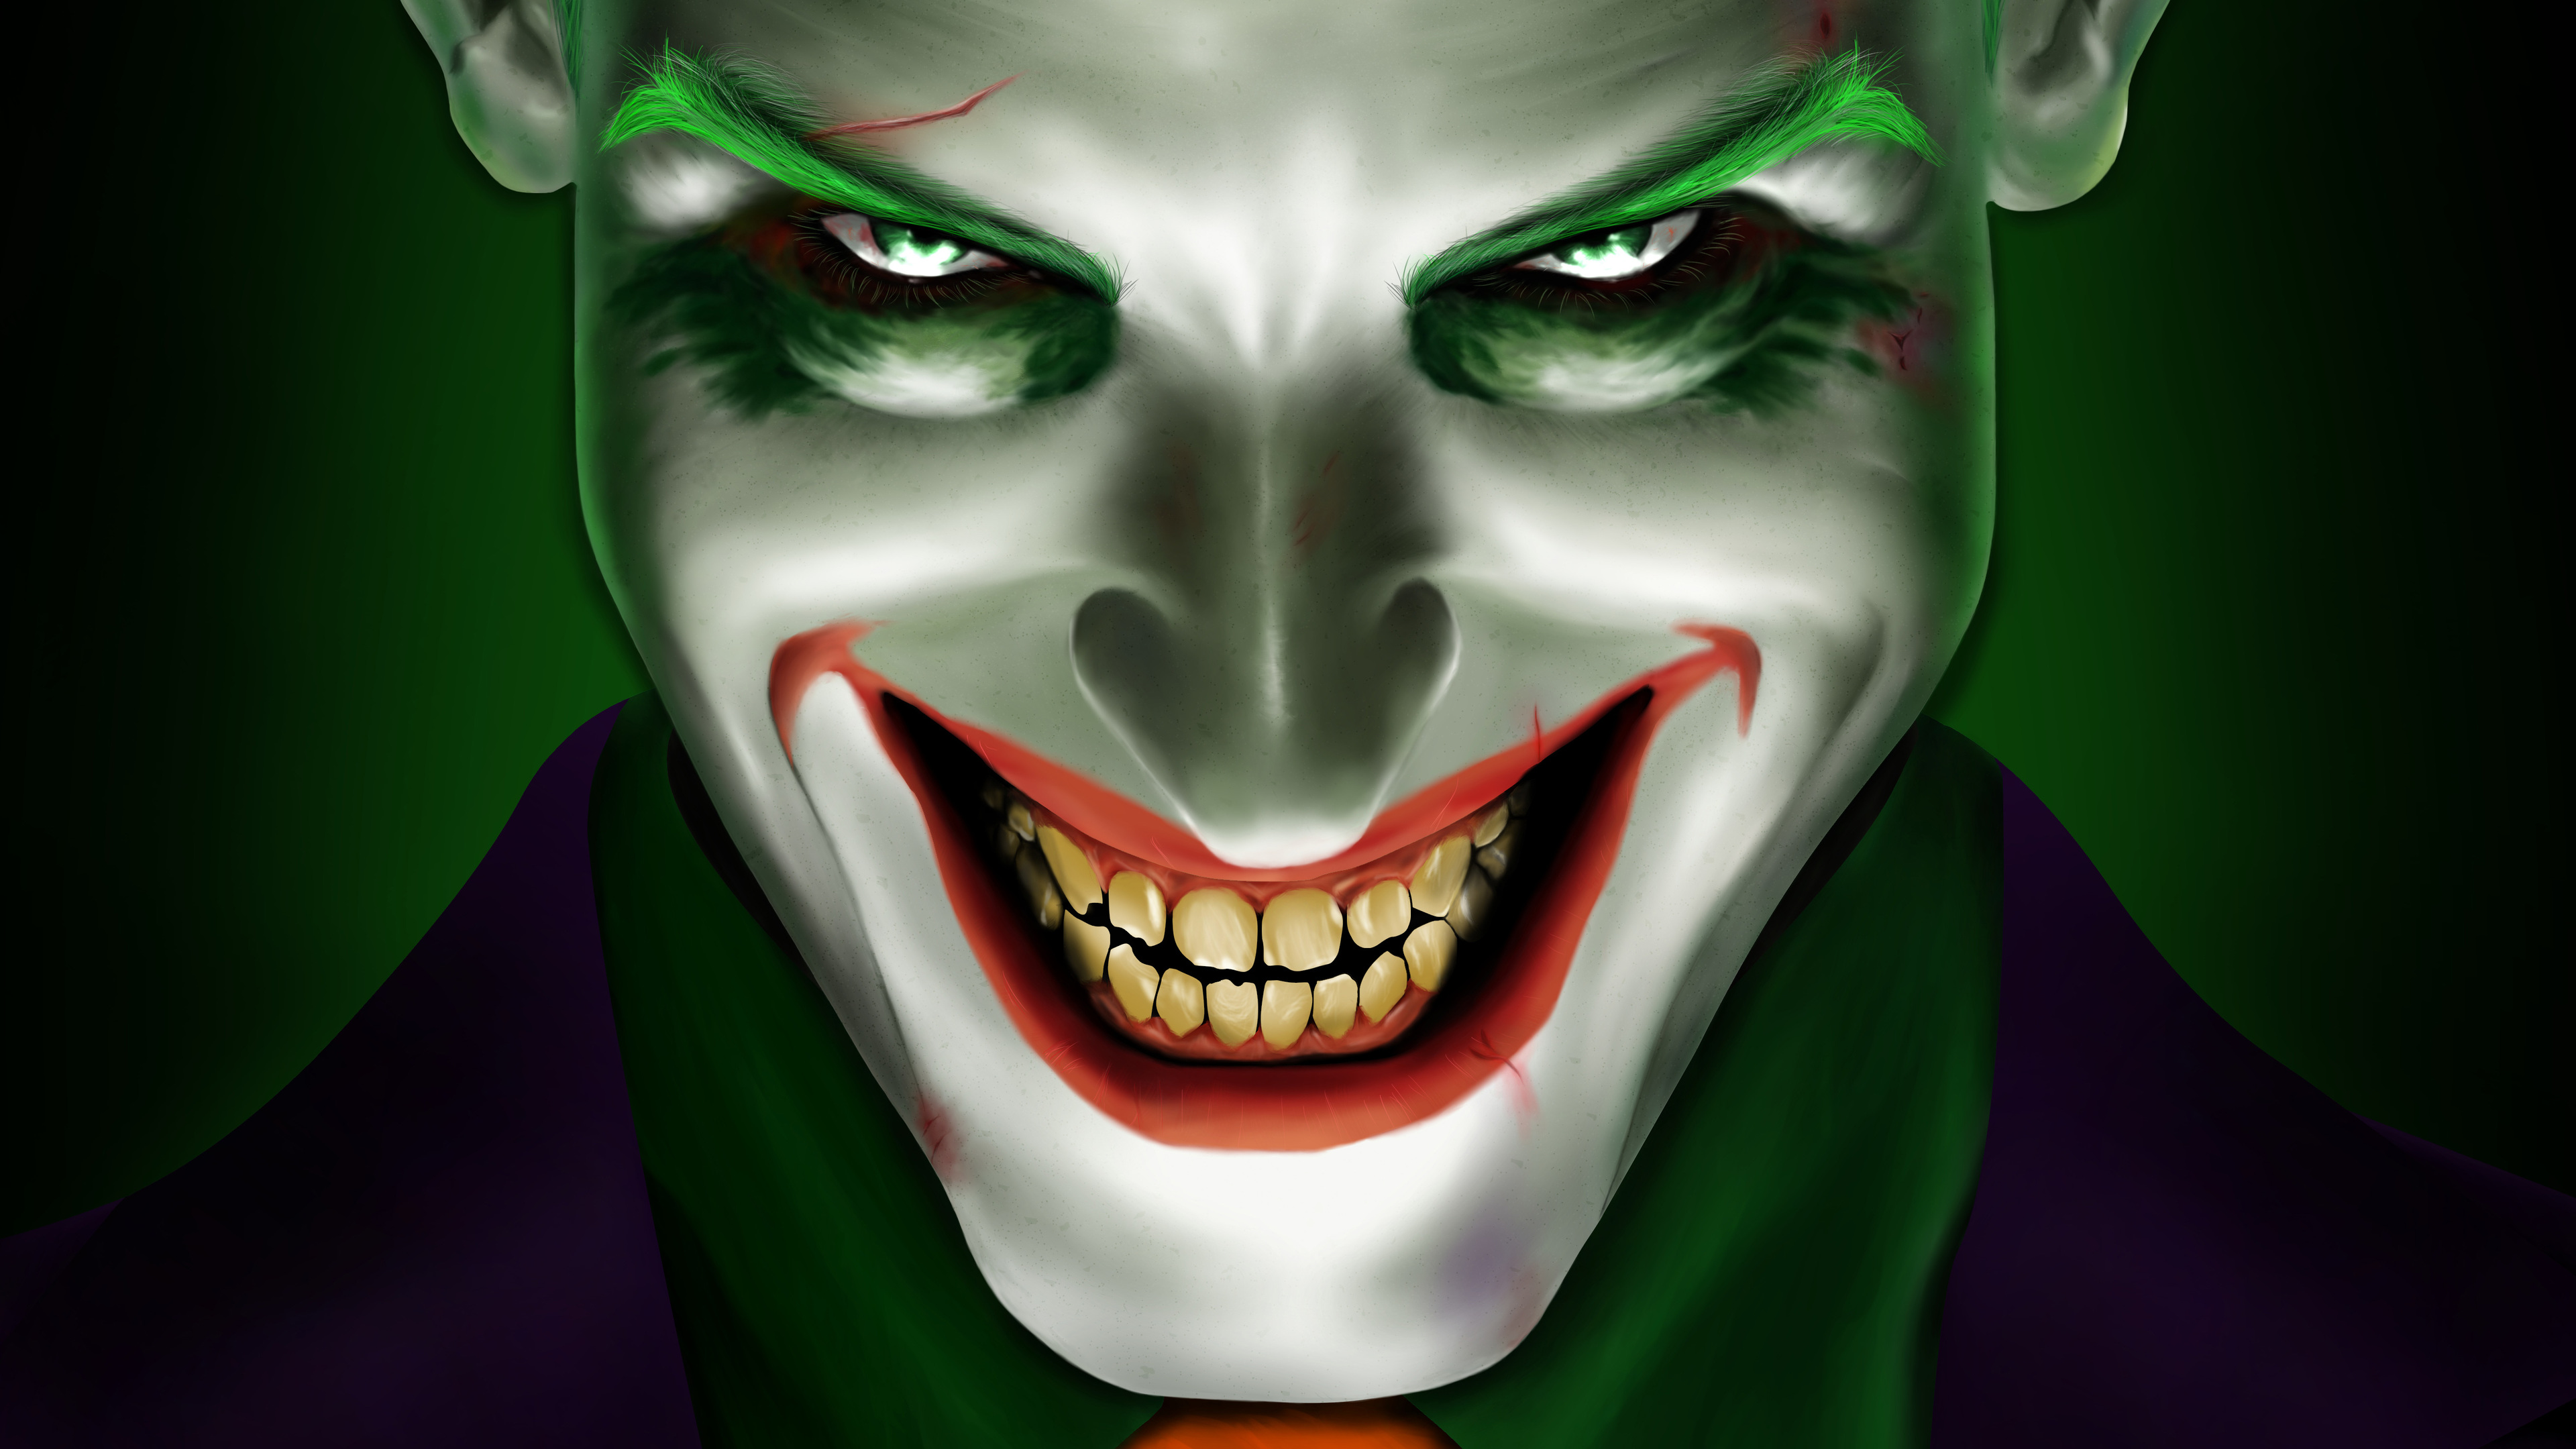 Wallpaper 4k Joker Smiling 5k Artist